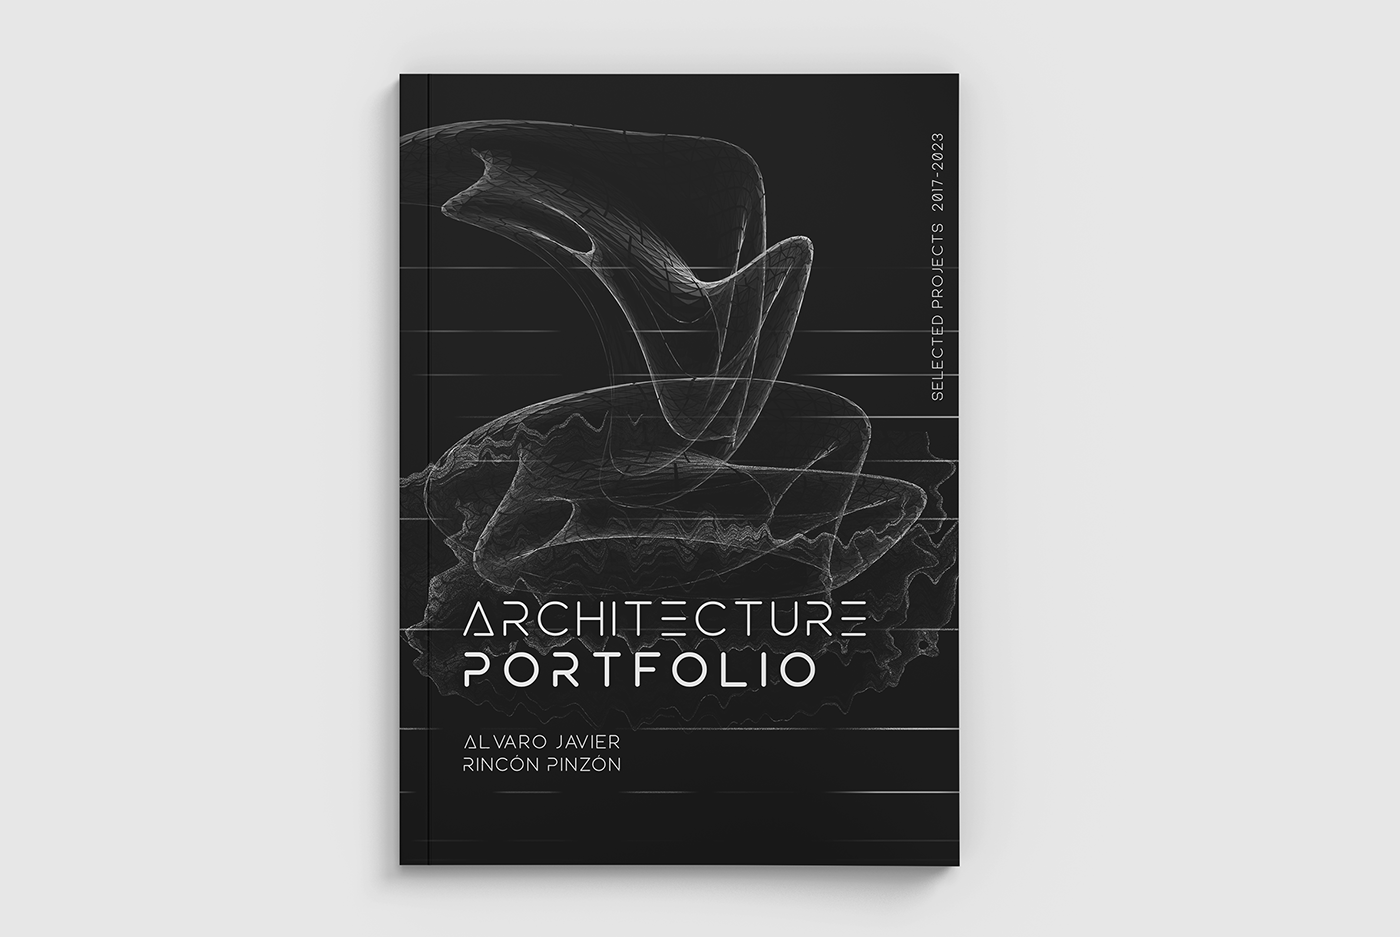 arquitectura portafolio pro portfolio 3D architectural design architecture Architecture portfolio portafolio arquitectura